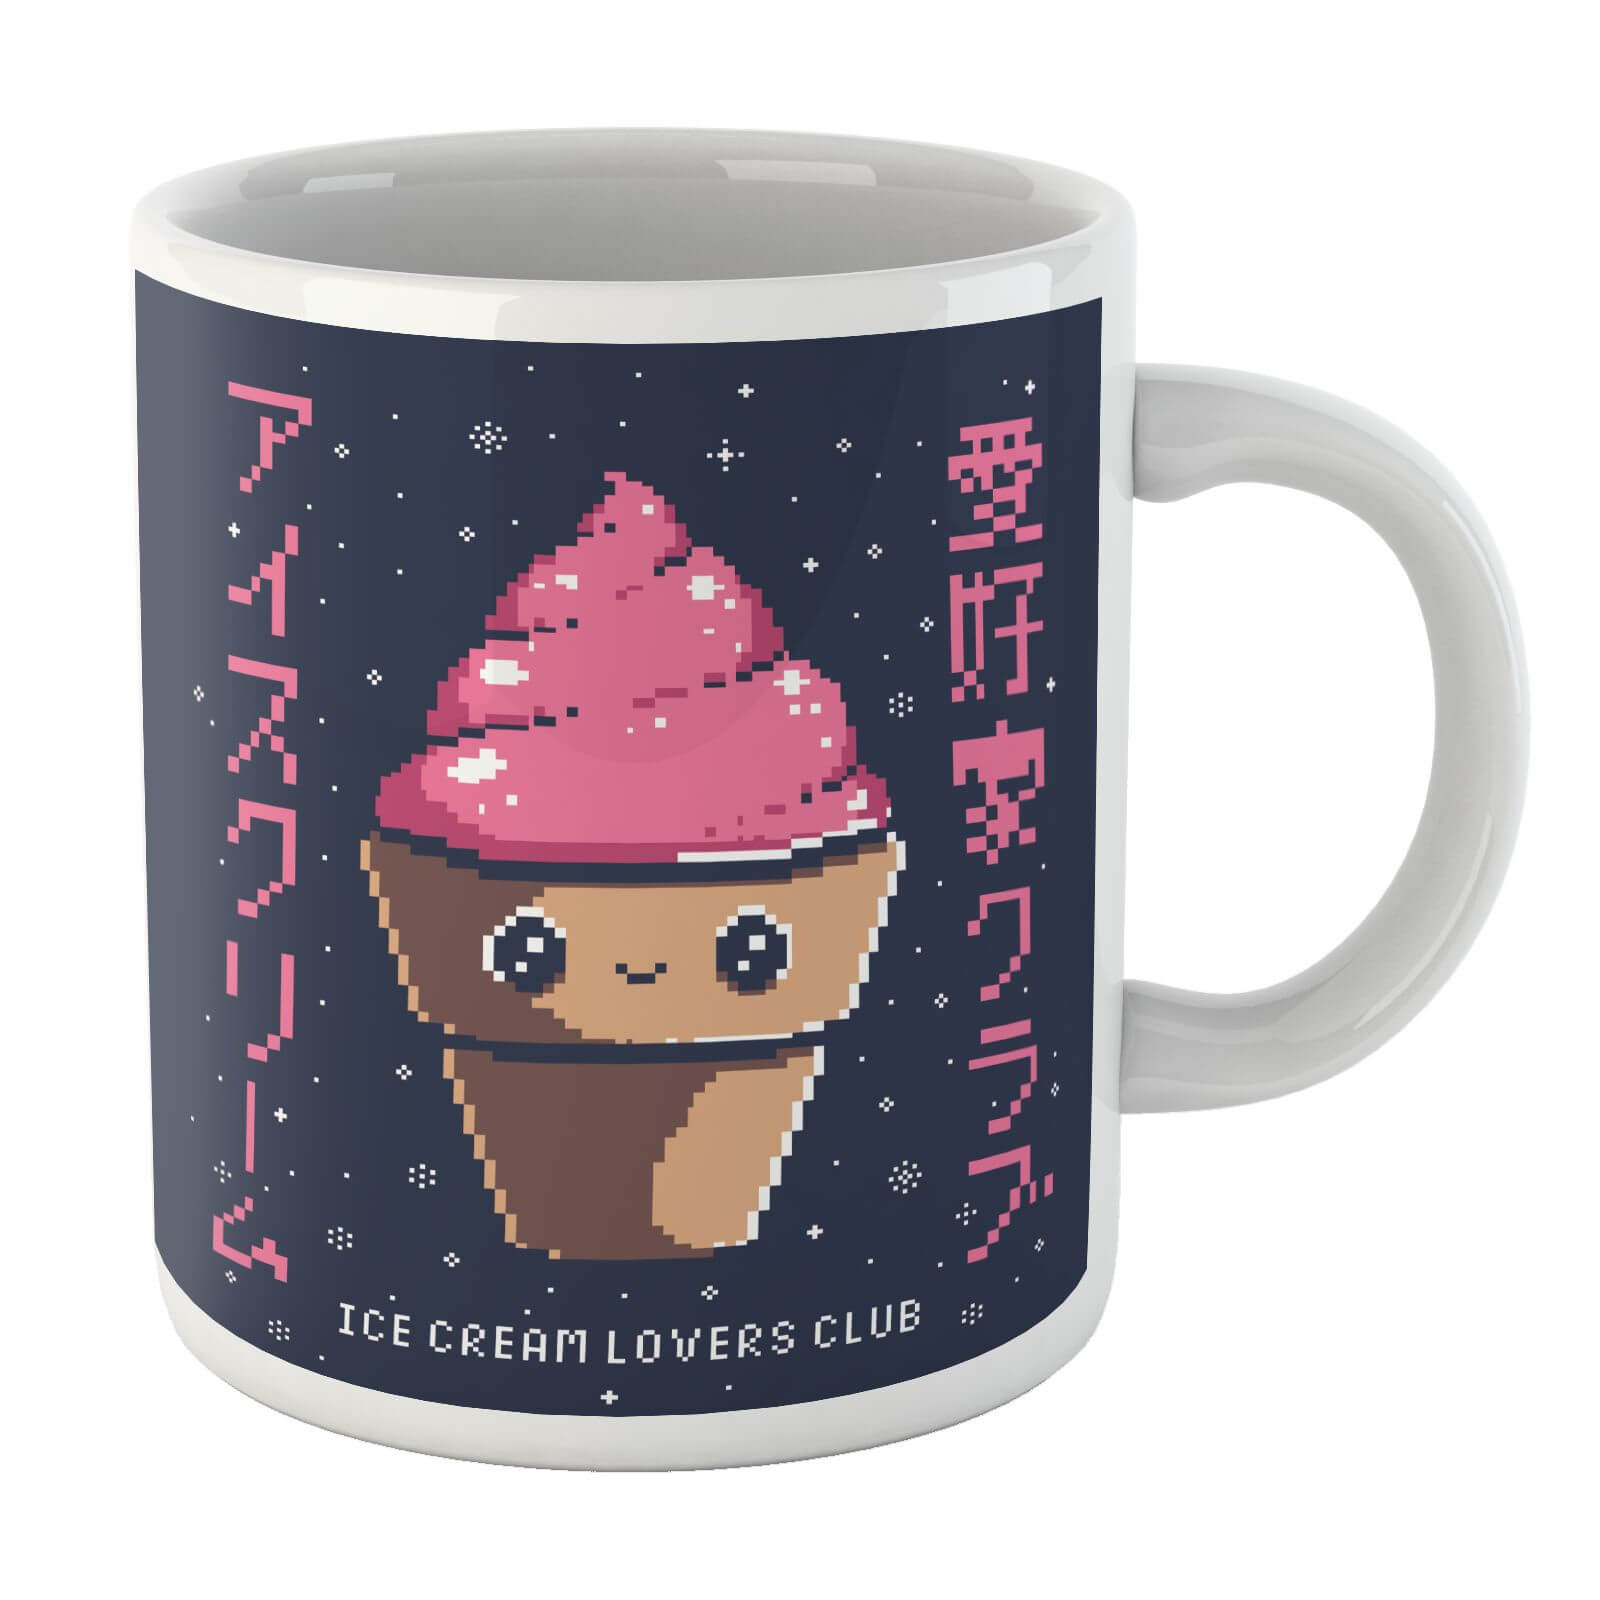 Ilustrata Ice Cream Lovers Club Mug